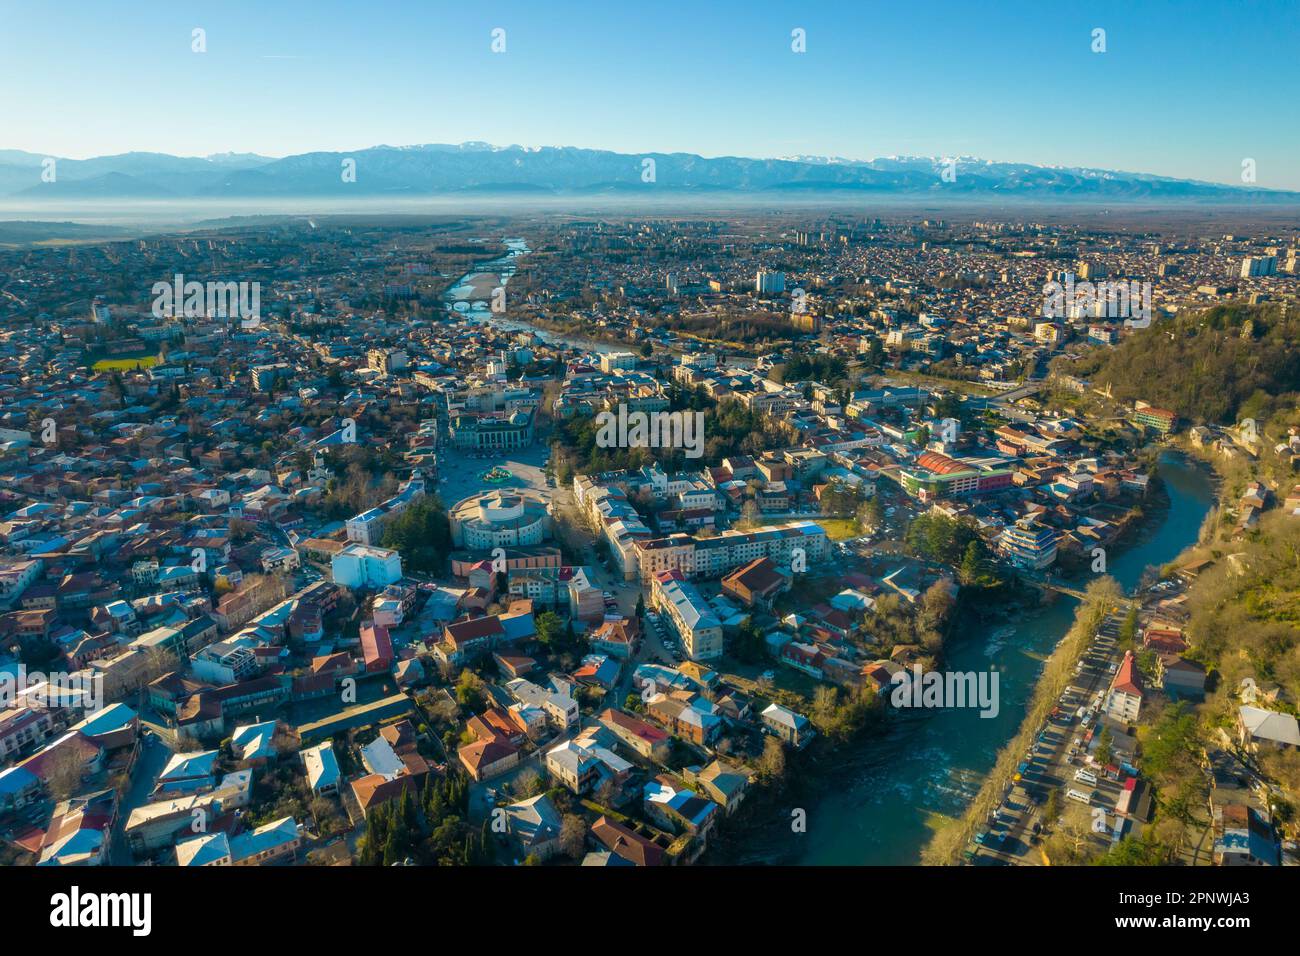 Vue aérienne de Kutaisi, l'une des plus grandes villes et destinations touristiques de Géorgie Banque D'Images